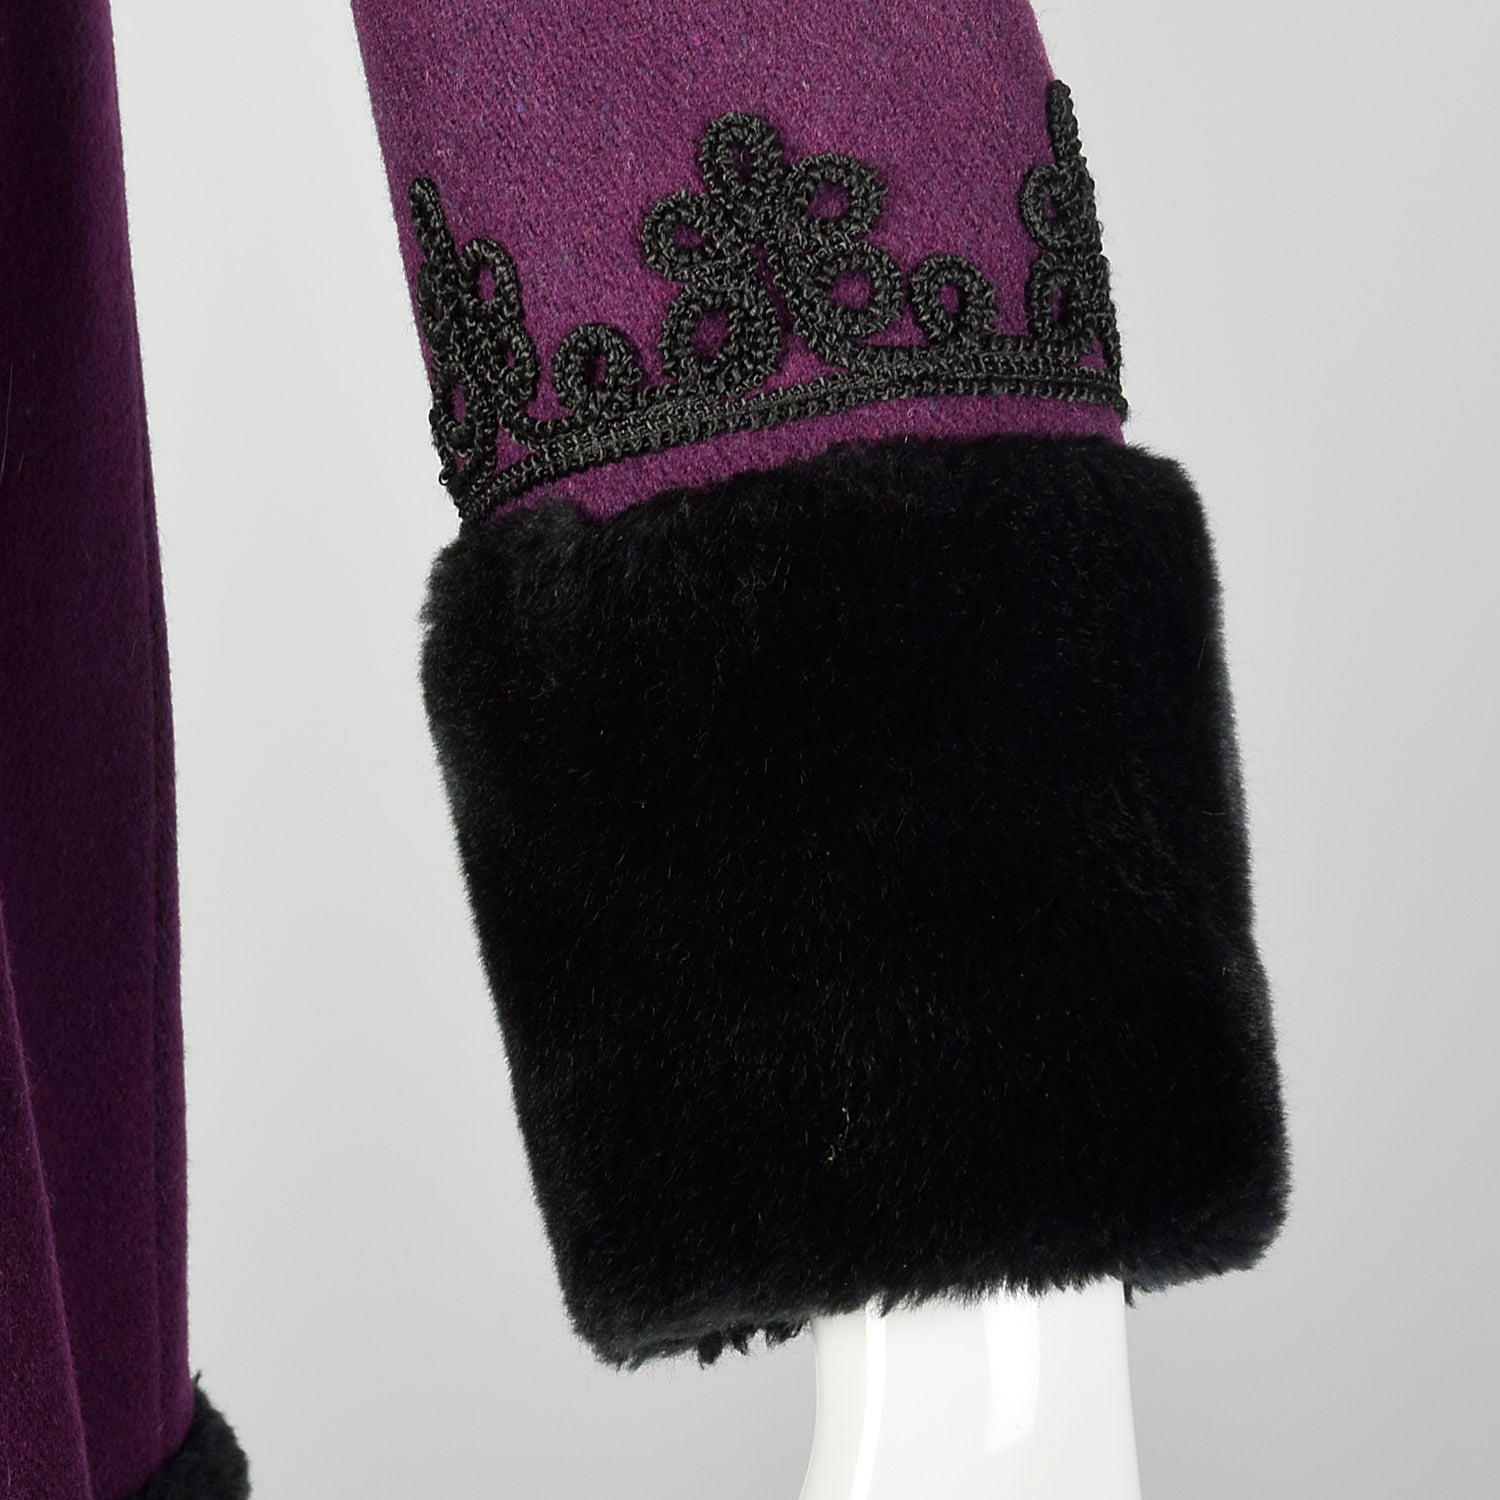 XS 1960s Purple Princess Coat with Faux Fur Trim